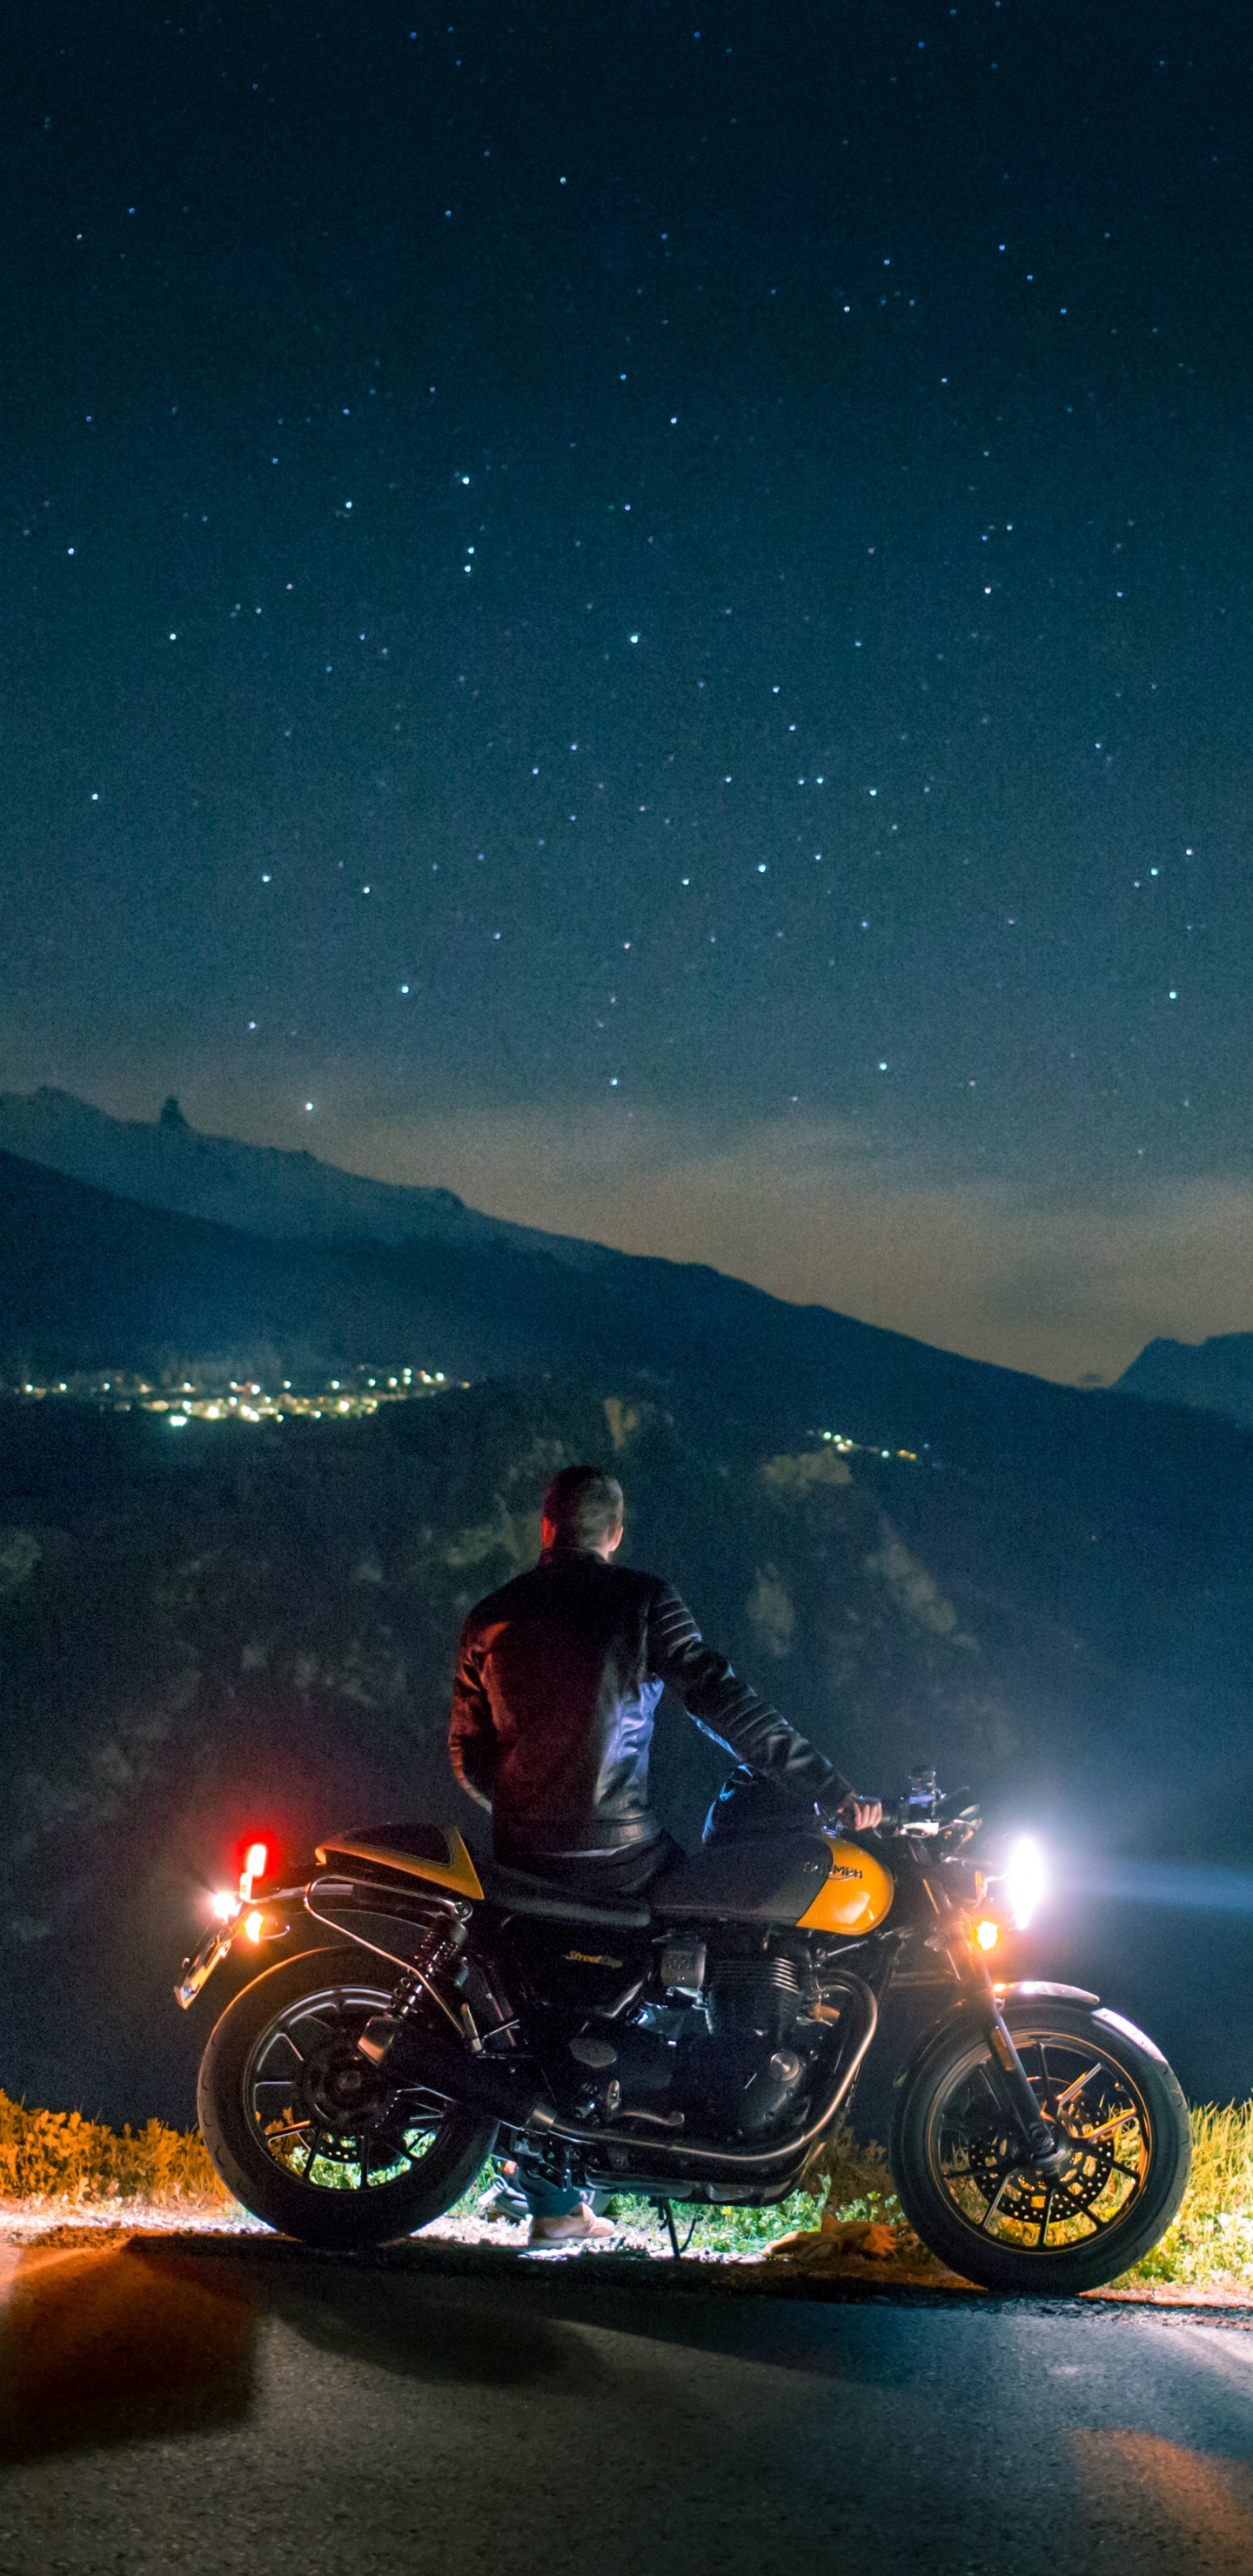 Hombre en Motocicleta en la Carretera Durante la Noche. Wallpaper in 1440x2960 Resolution